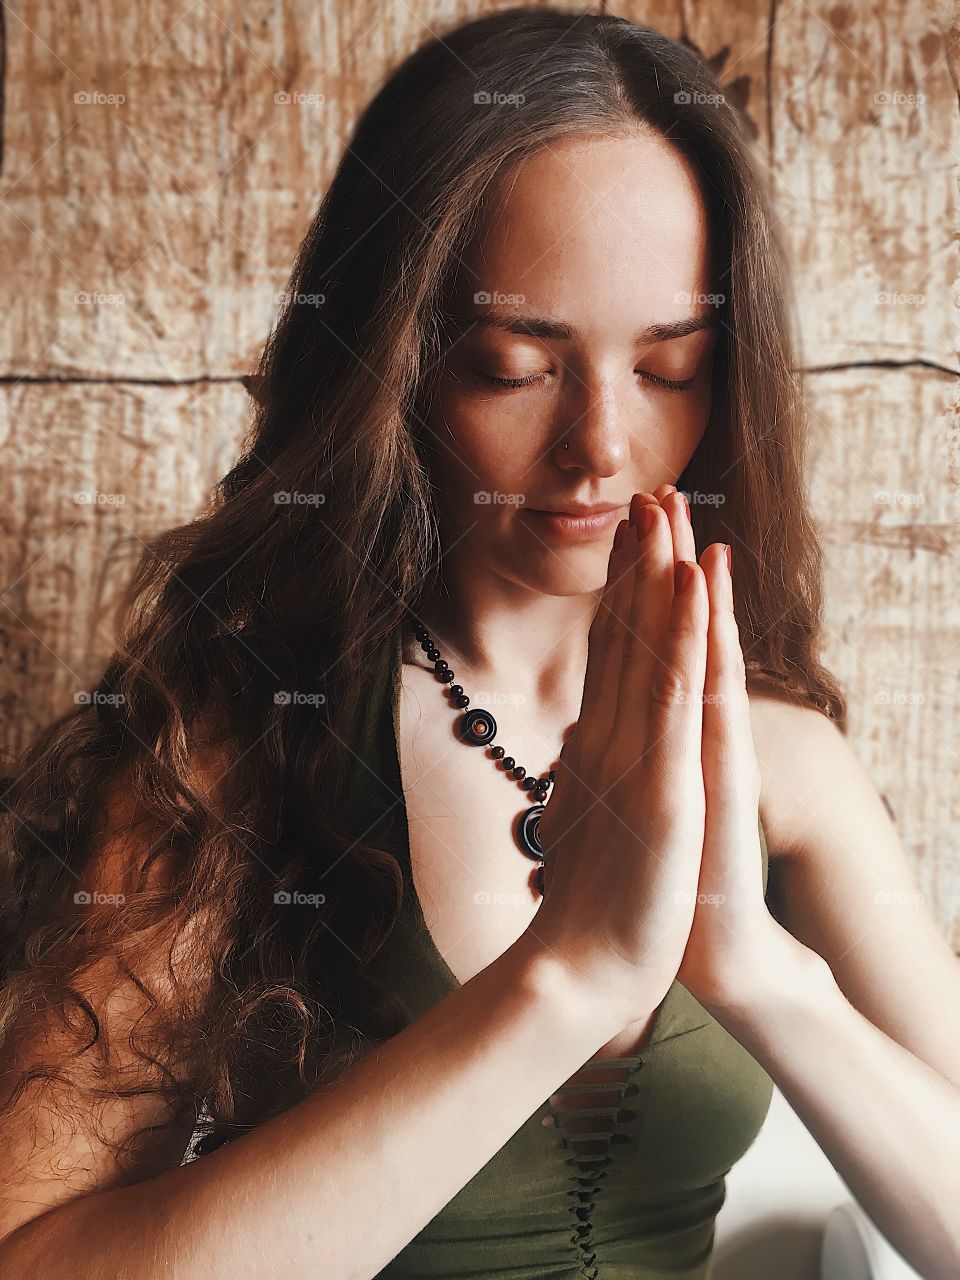 Girl pray